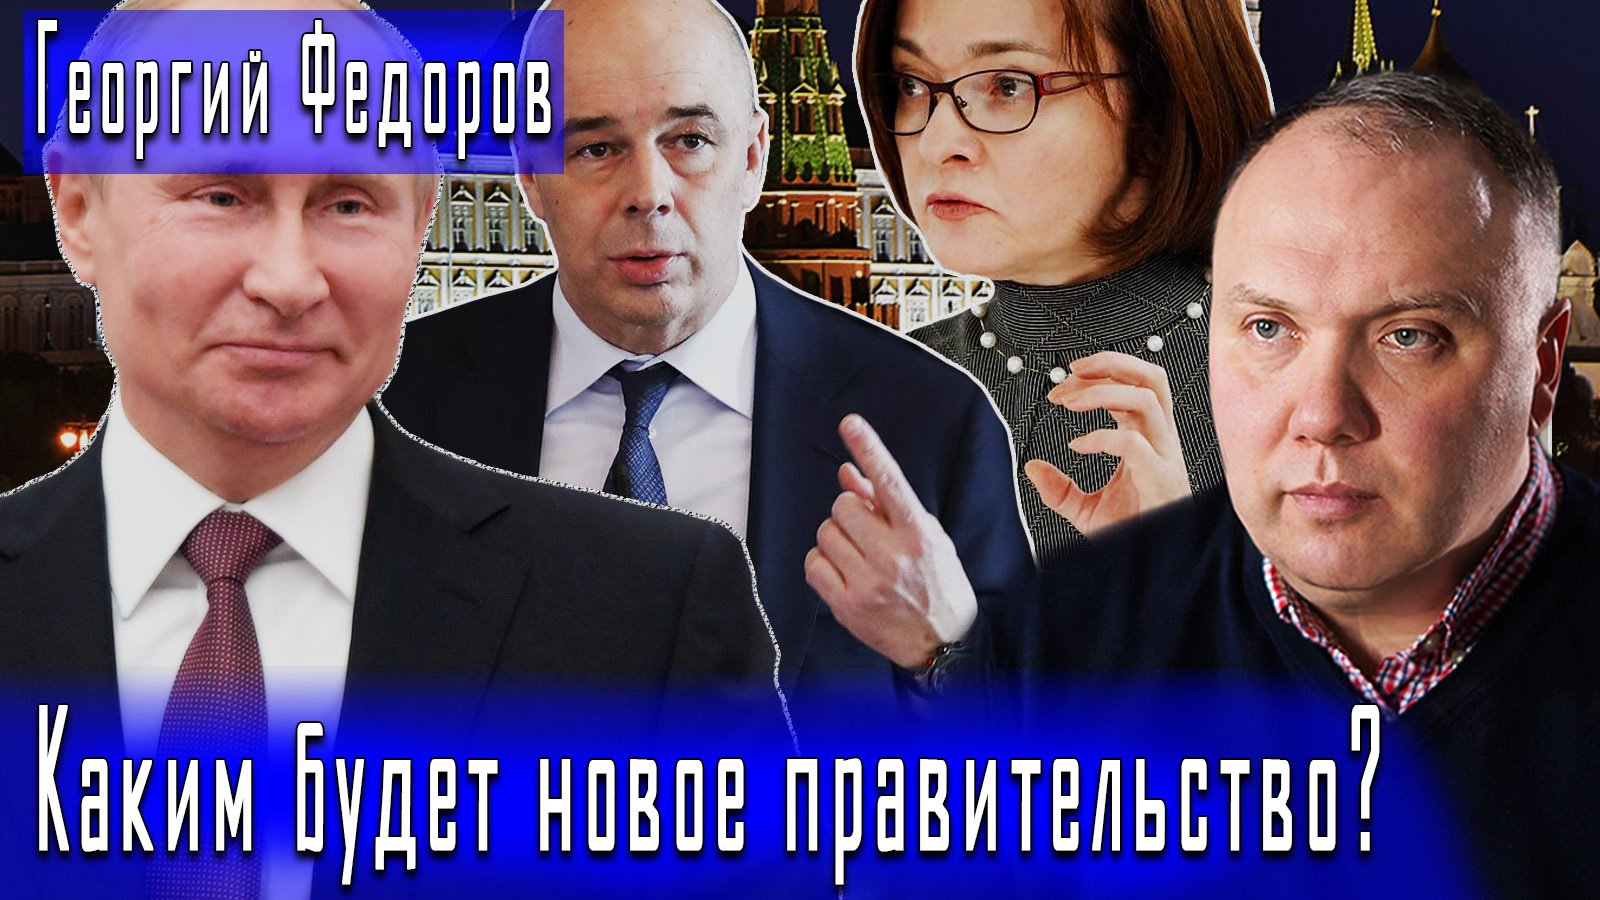 Каким будет новое правительство? #ГеоргийФедоров #ДмитрийДанилов